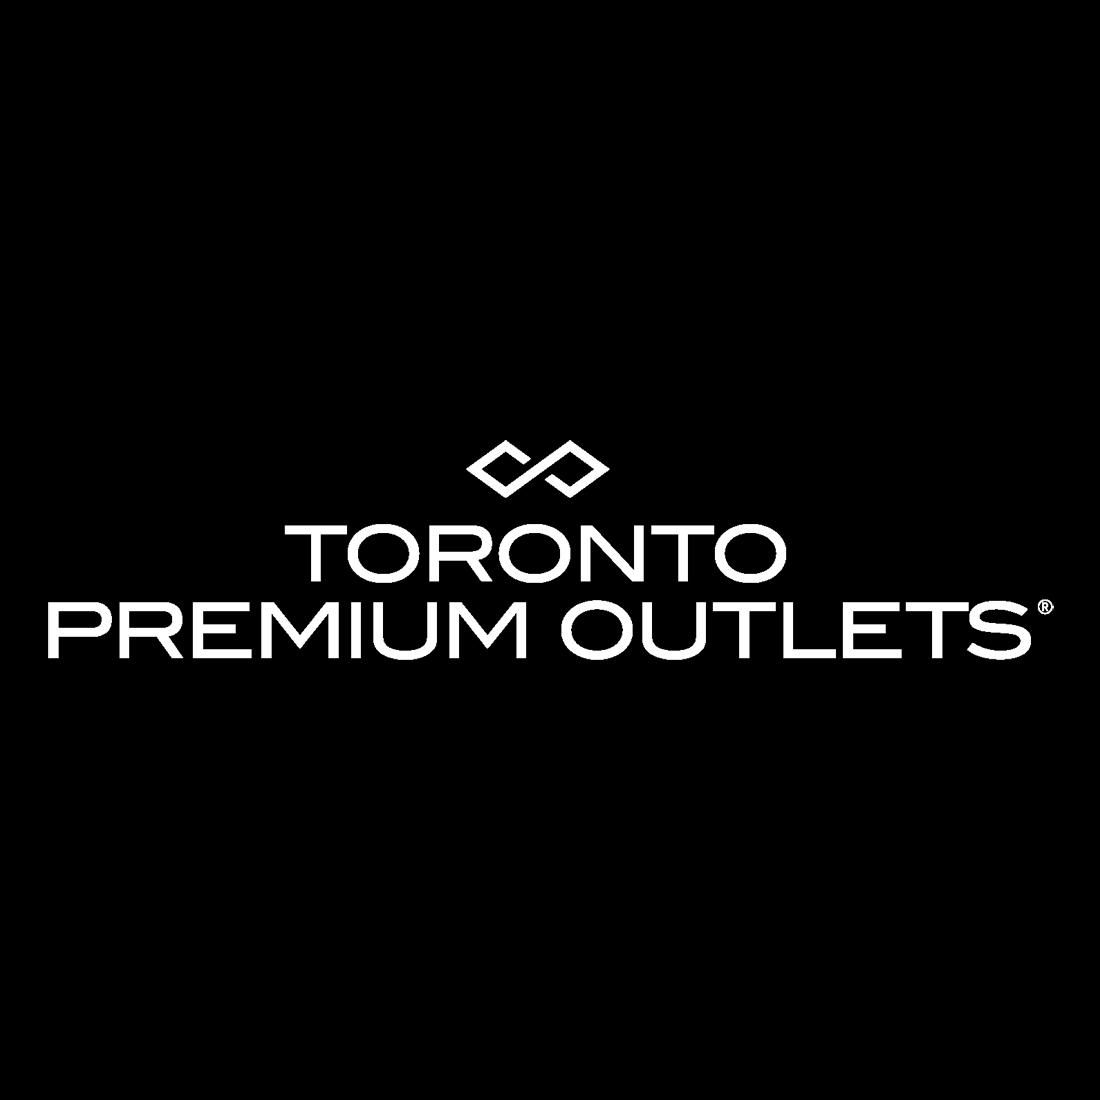 Toronto Premium Outlets - Magasins d'usines